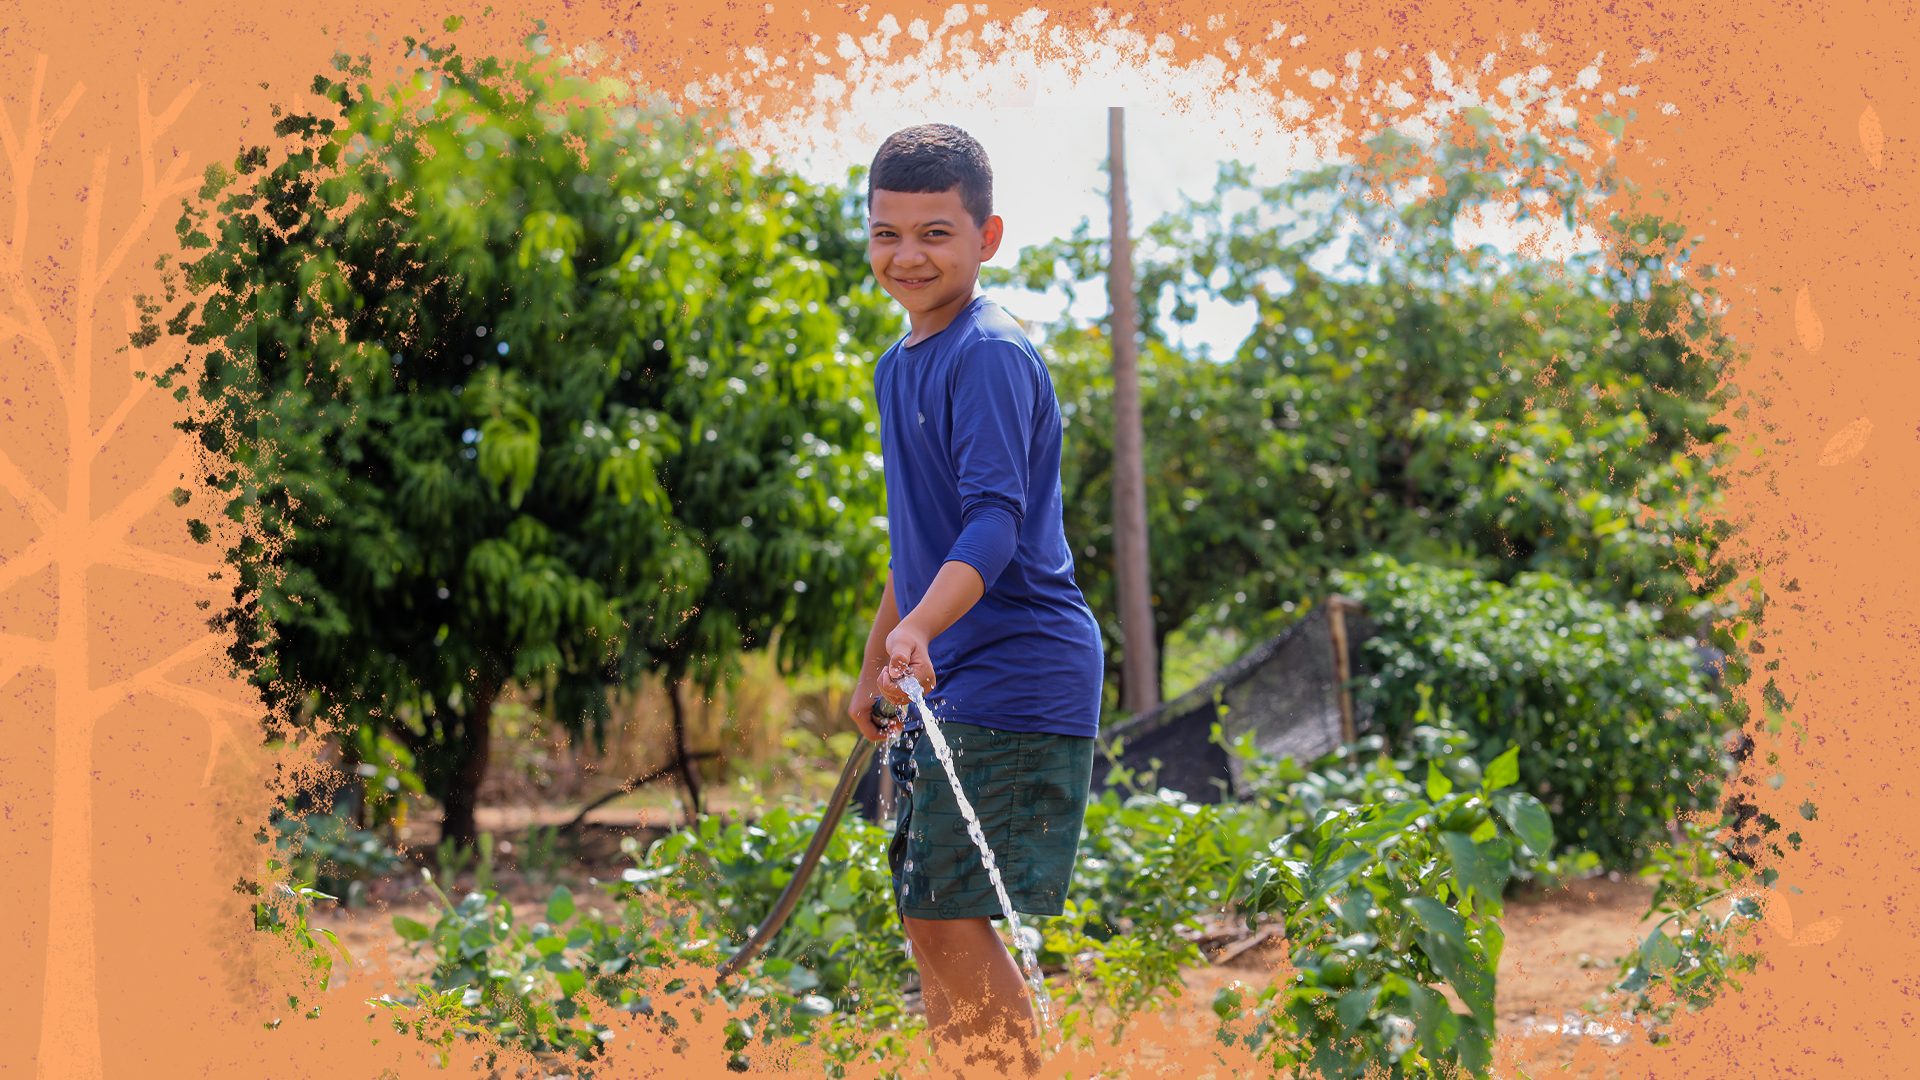 Um menino, vestido de shorts e camisa azul, está regando uma plantação com uma mangueira, e sorrindo para a foto. Ele está em um cenário de crise hídrica